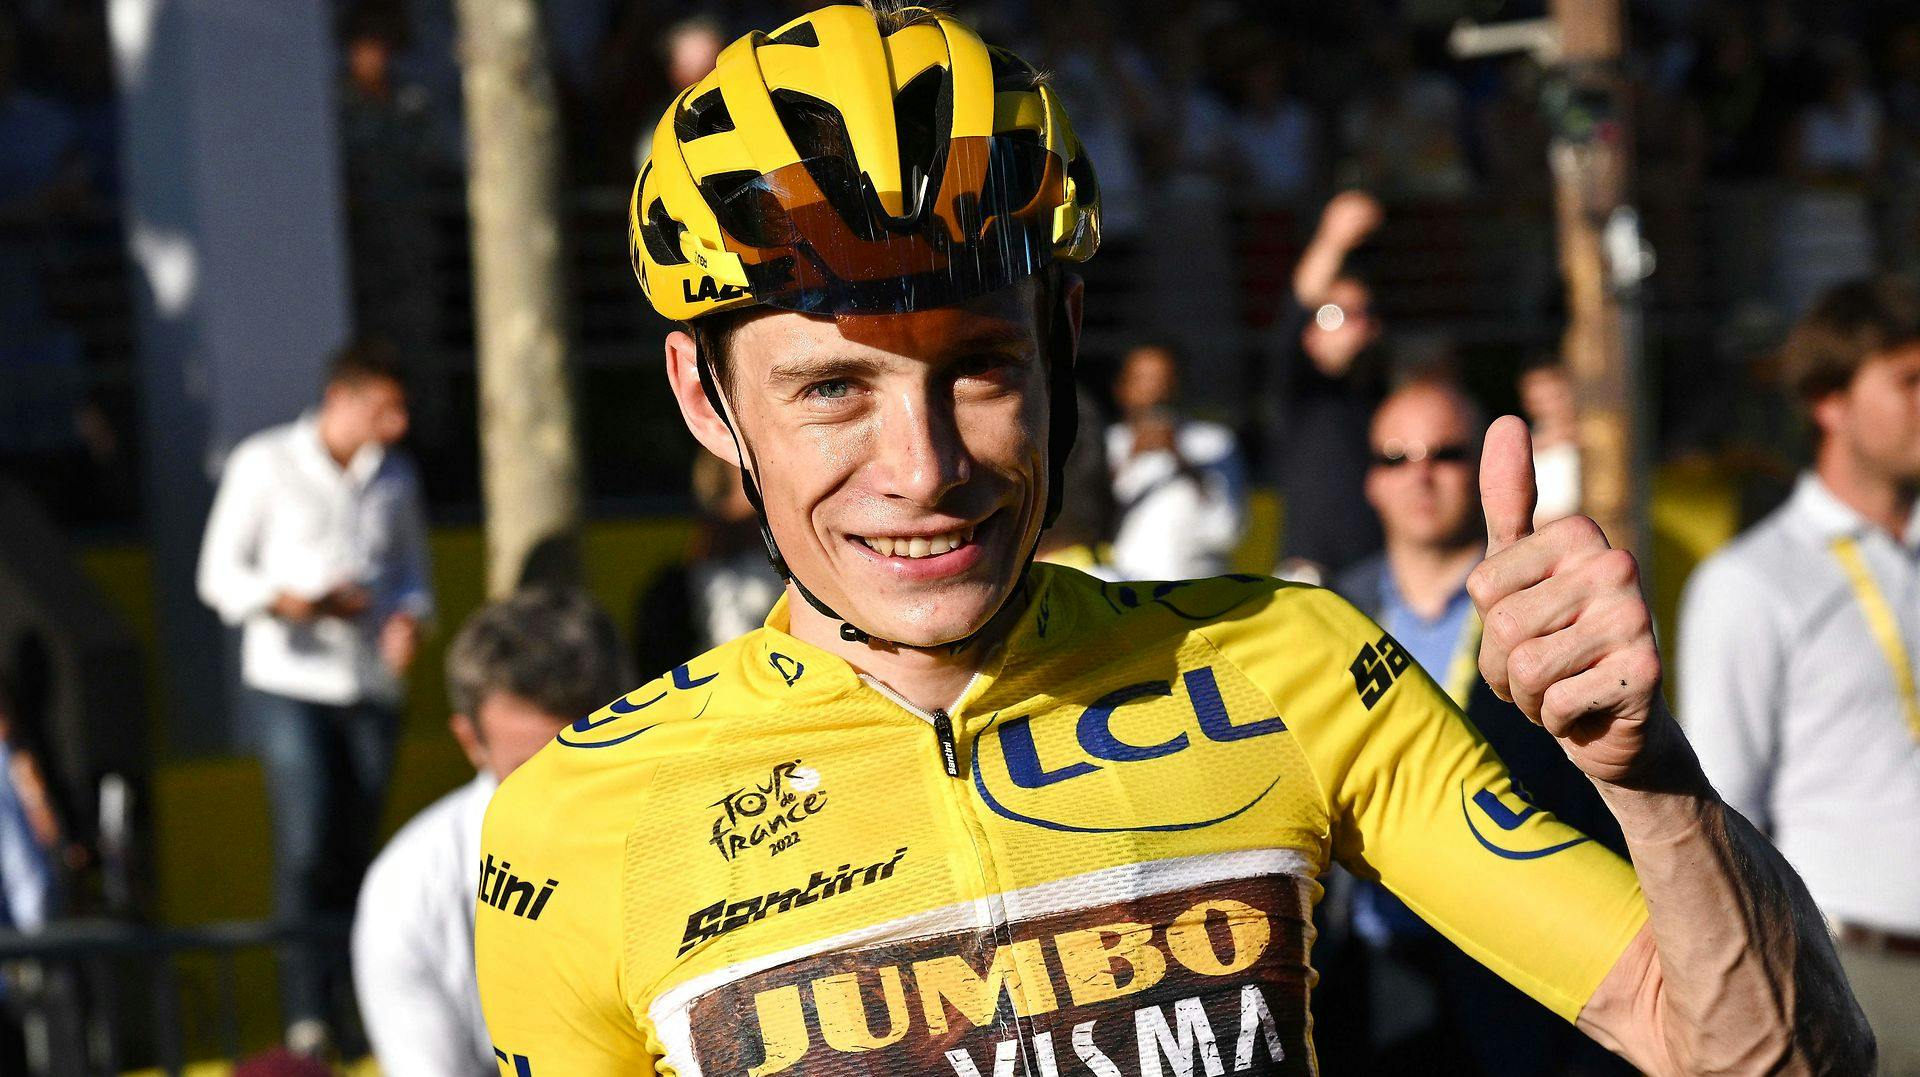 Årets Tour de France-vinder blev den danske Jonas Vingegaard.